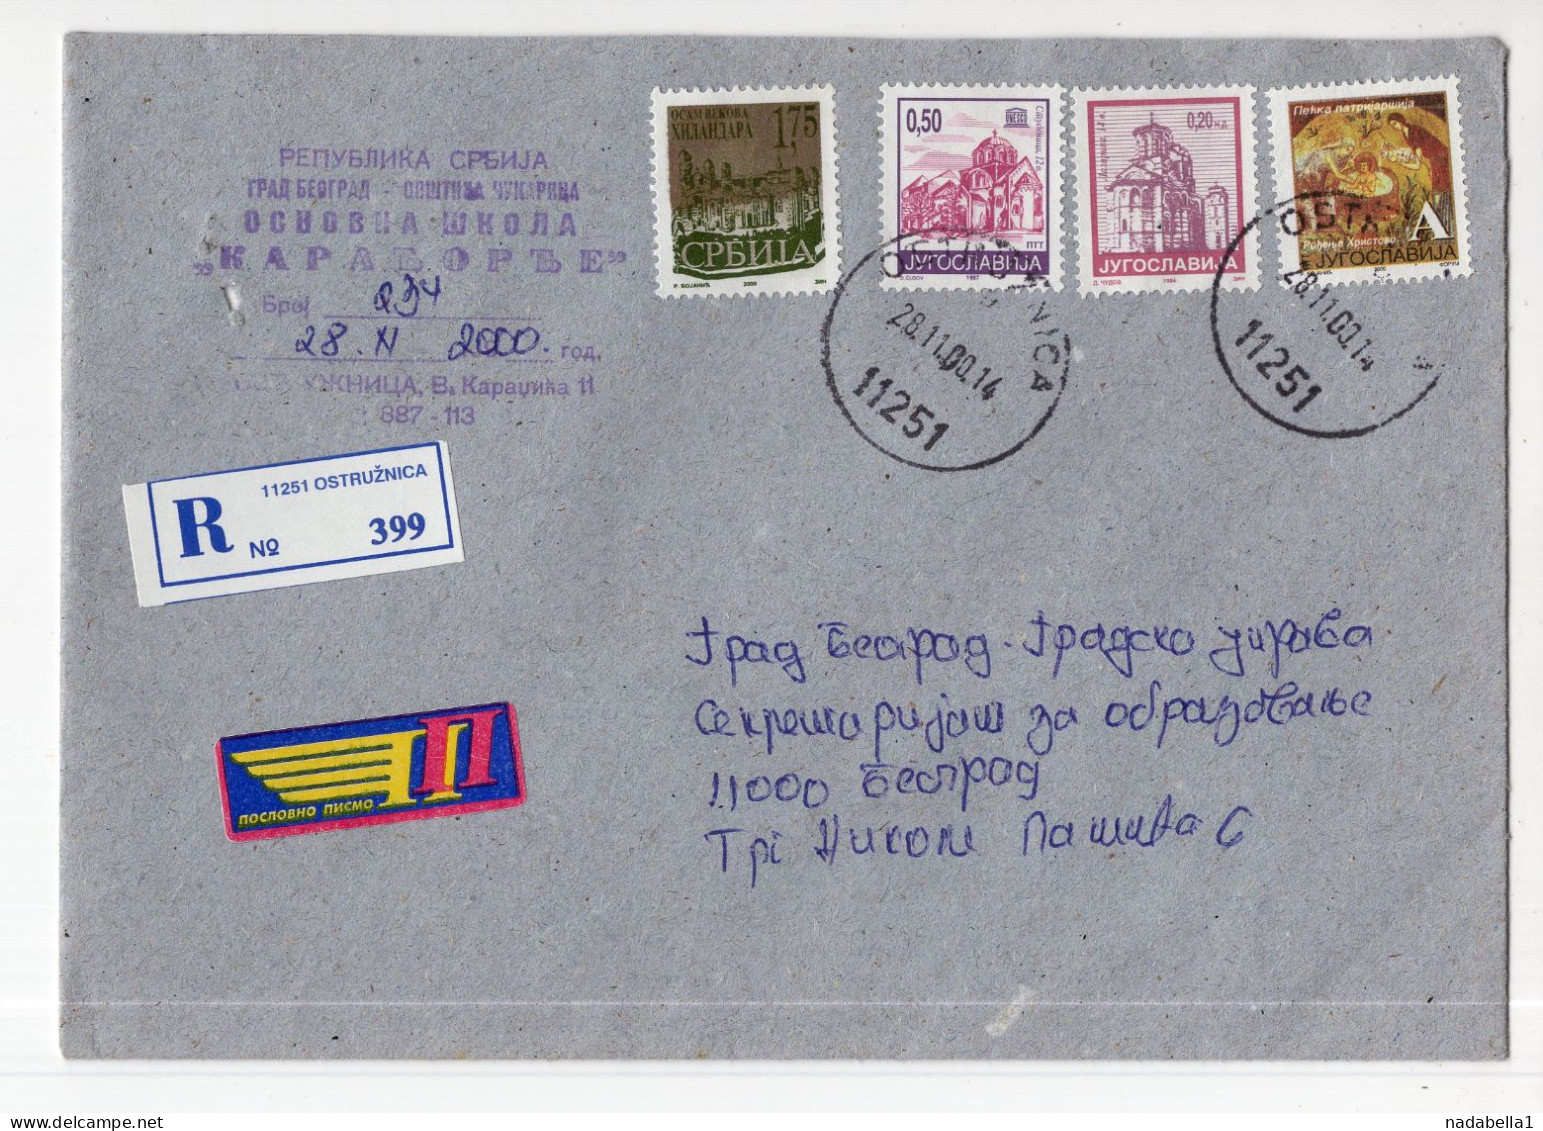 2000. YUGOSLAVIA,SERBIA,OSTRUZNICA,COVER,4 SERBIAN MONASTERY STAMPS - Cartas & Documentos